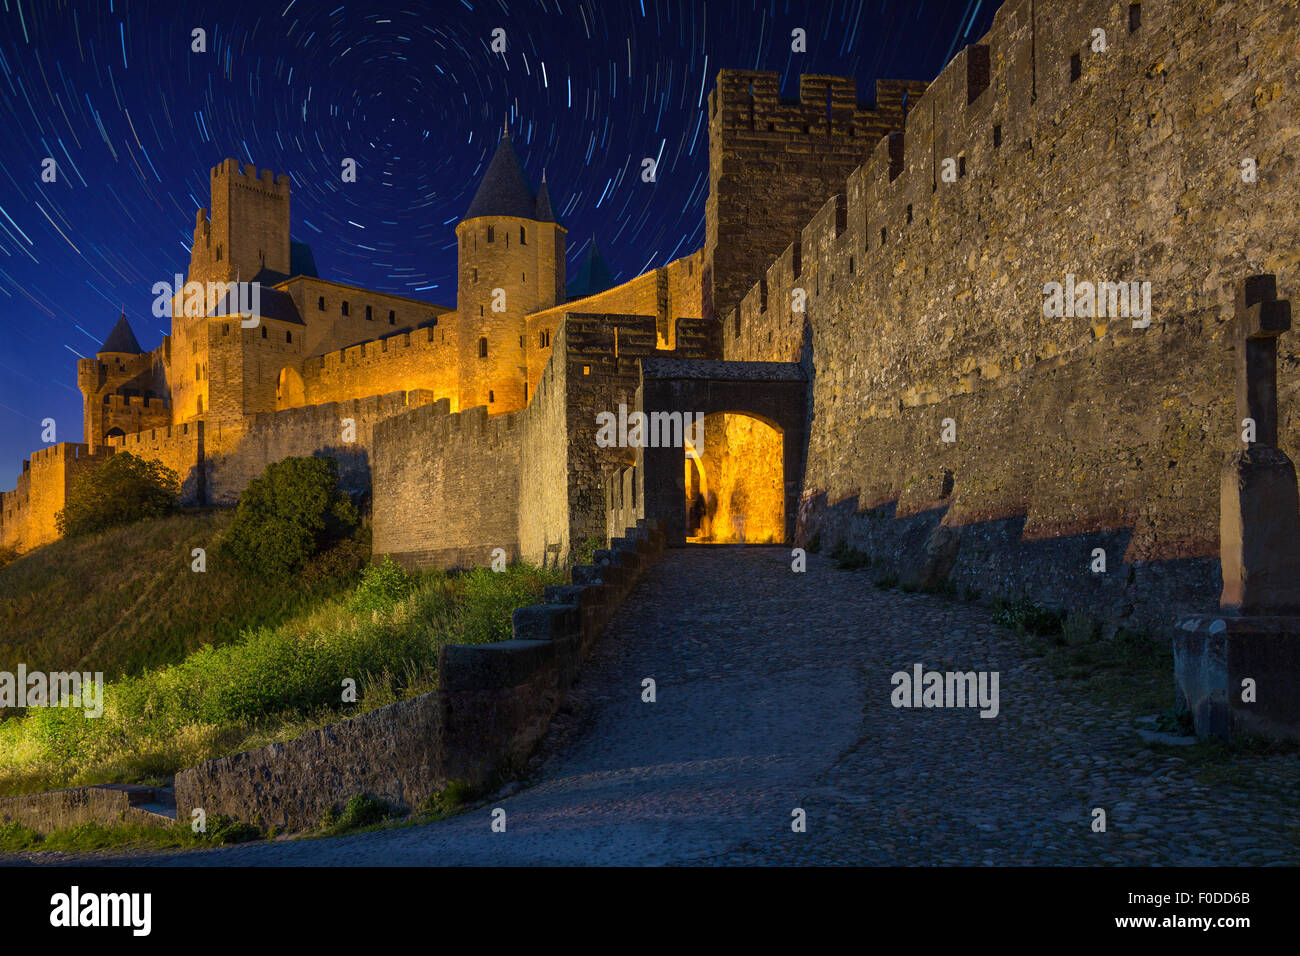 Tracce stellari sopra la fortezza medievale e la città fortificata di Carcassonne nella regione Languedoc-Roussillon del sud-ovest della Francia. Foto Stock